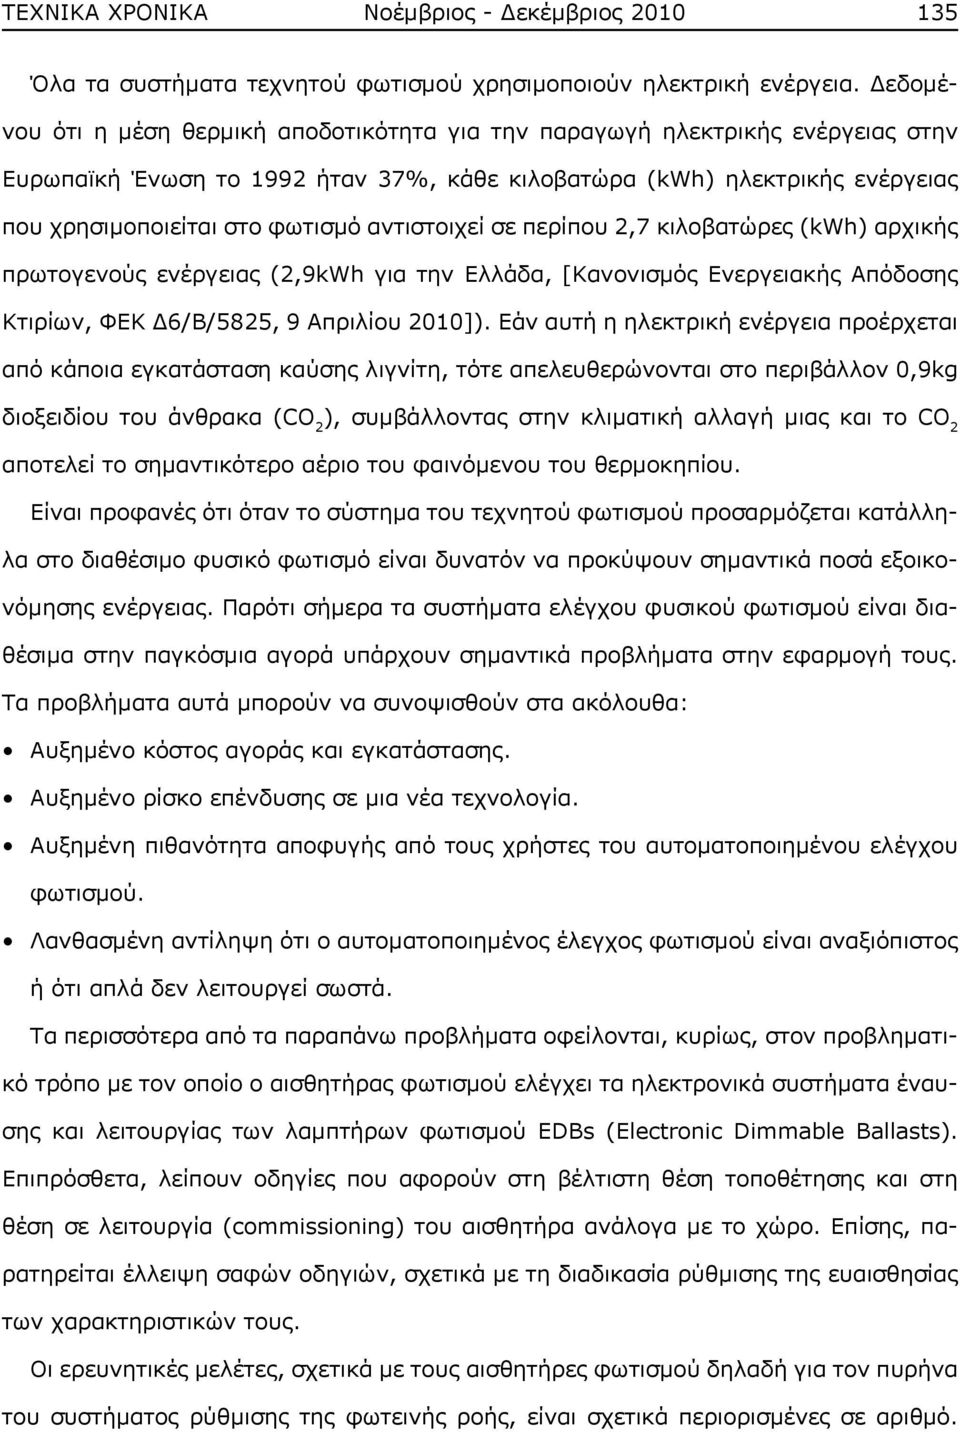 αντιστοιχεί σε περίπου 2,7 κιλοβατώρες (kwh) αρχικής πρωτογενούς ενέργειας (2,9kWh για την Ελλάδα, [Κανονισμός Ενεργειακής Απόδοσης Κτιρίων, ΦΕΚ Δ6/Β/5825, 9 Απριλίου 2010]).